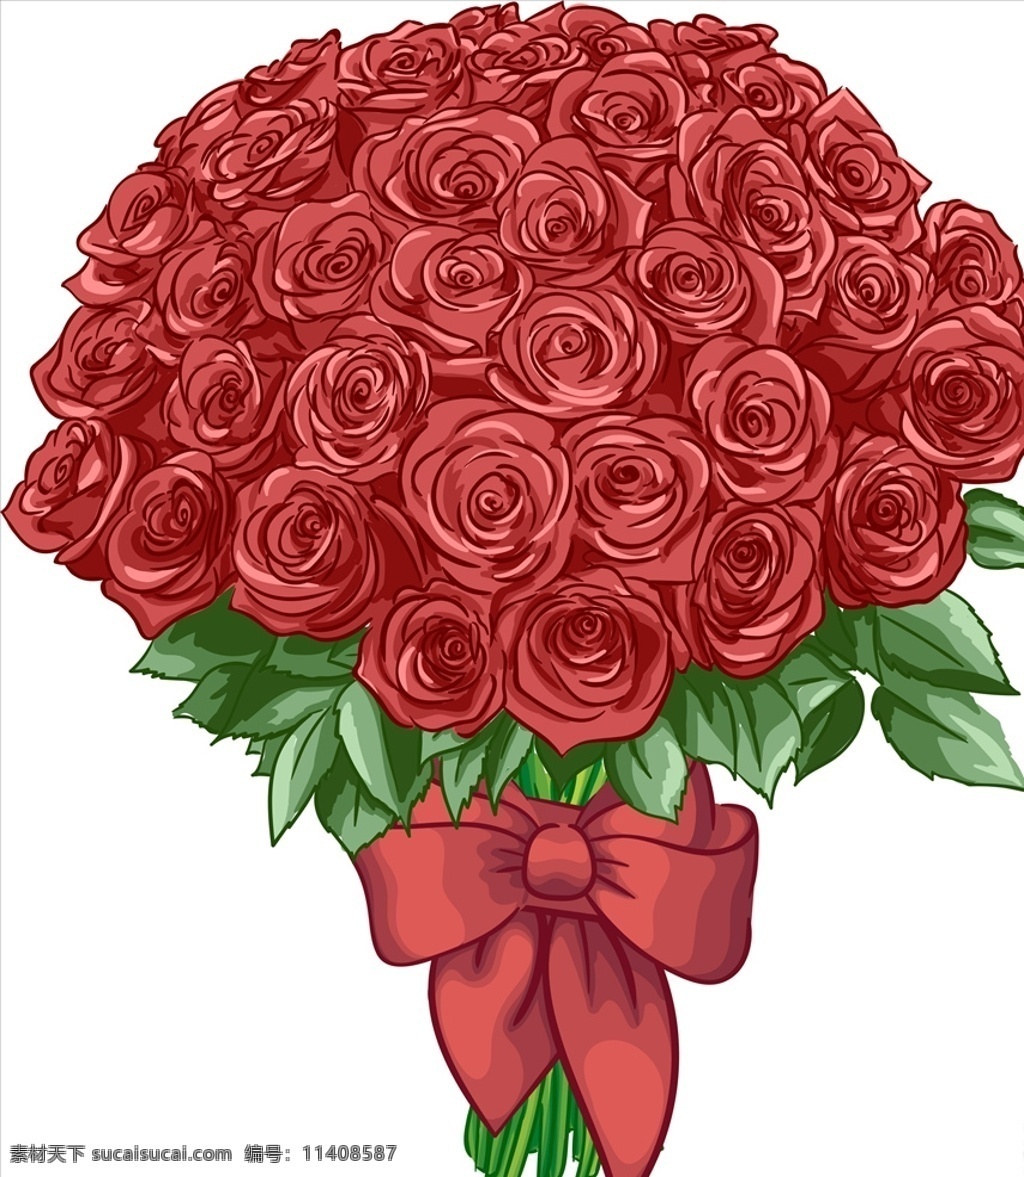 玫瑰花束 玫瑰花 情人节素材 蔷薇植物 玫瑰 玫瑰花纹 玫瑰花朵 花束 手绘 写实 蝴蝶结 花草树木 生物世界 花草